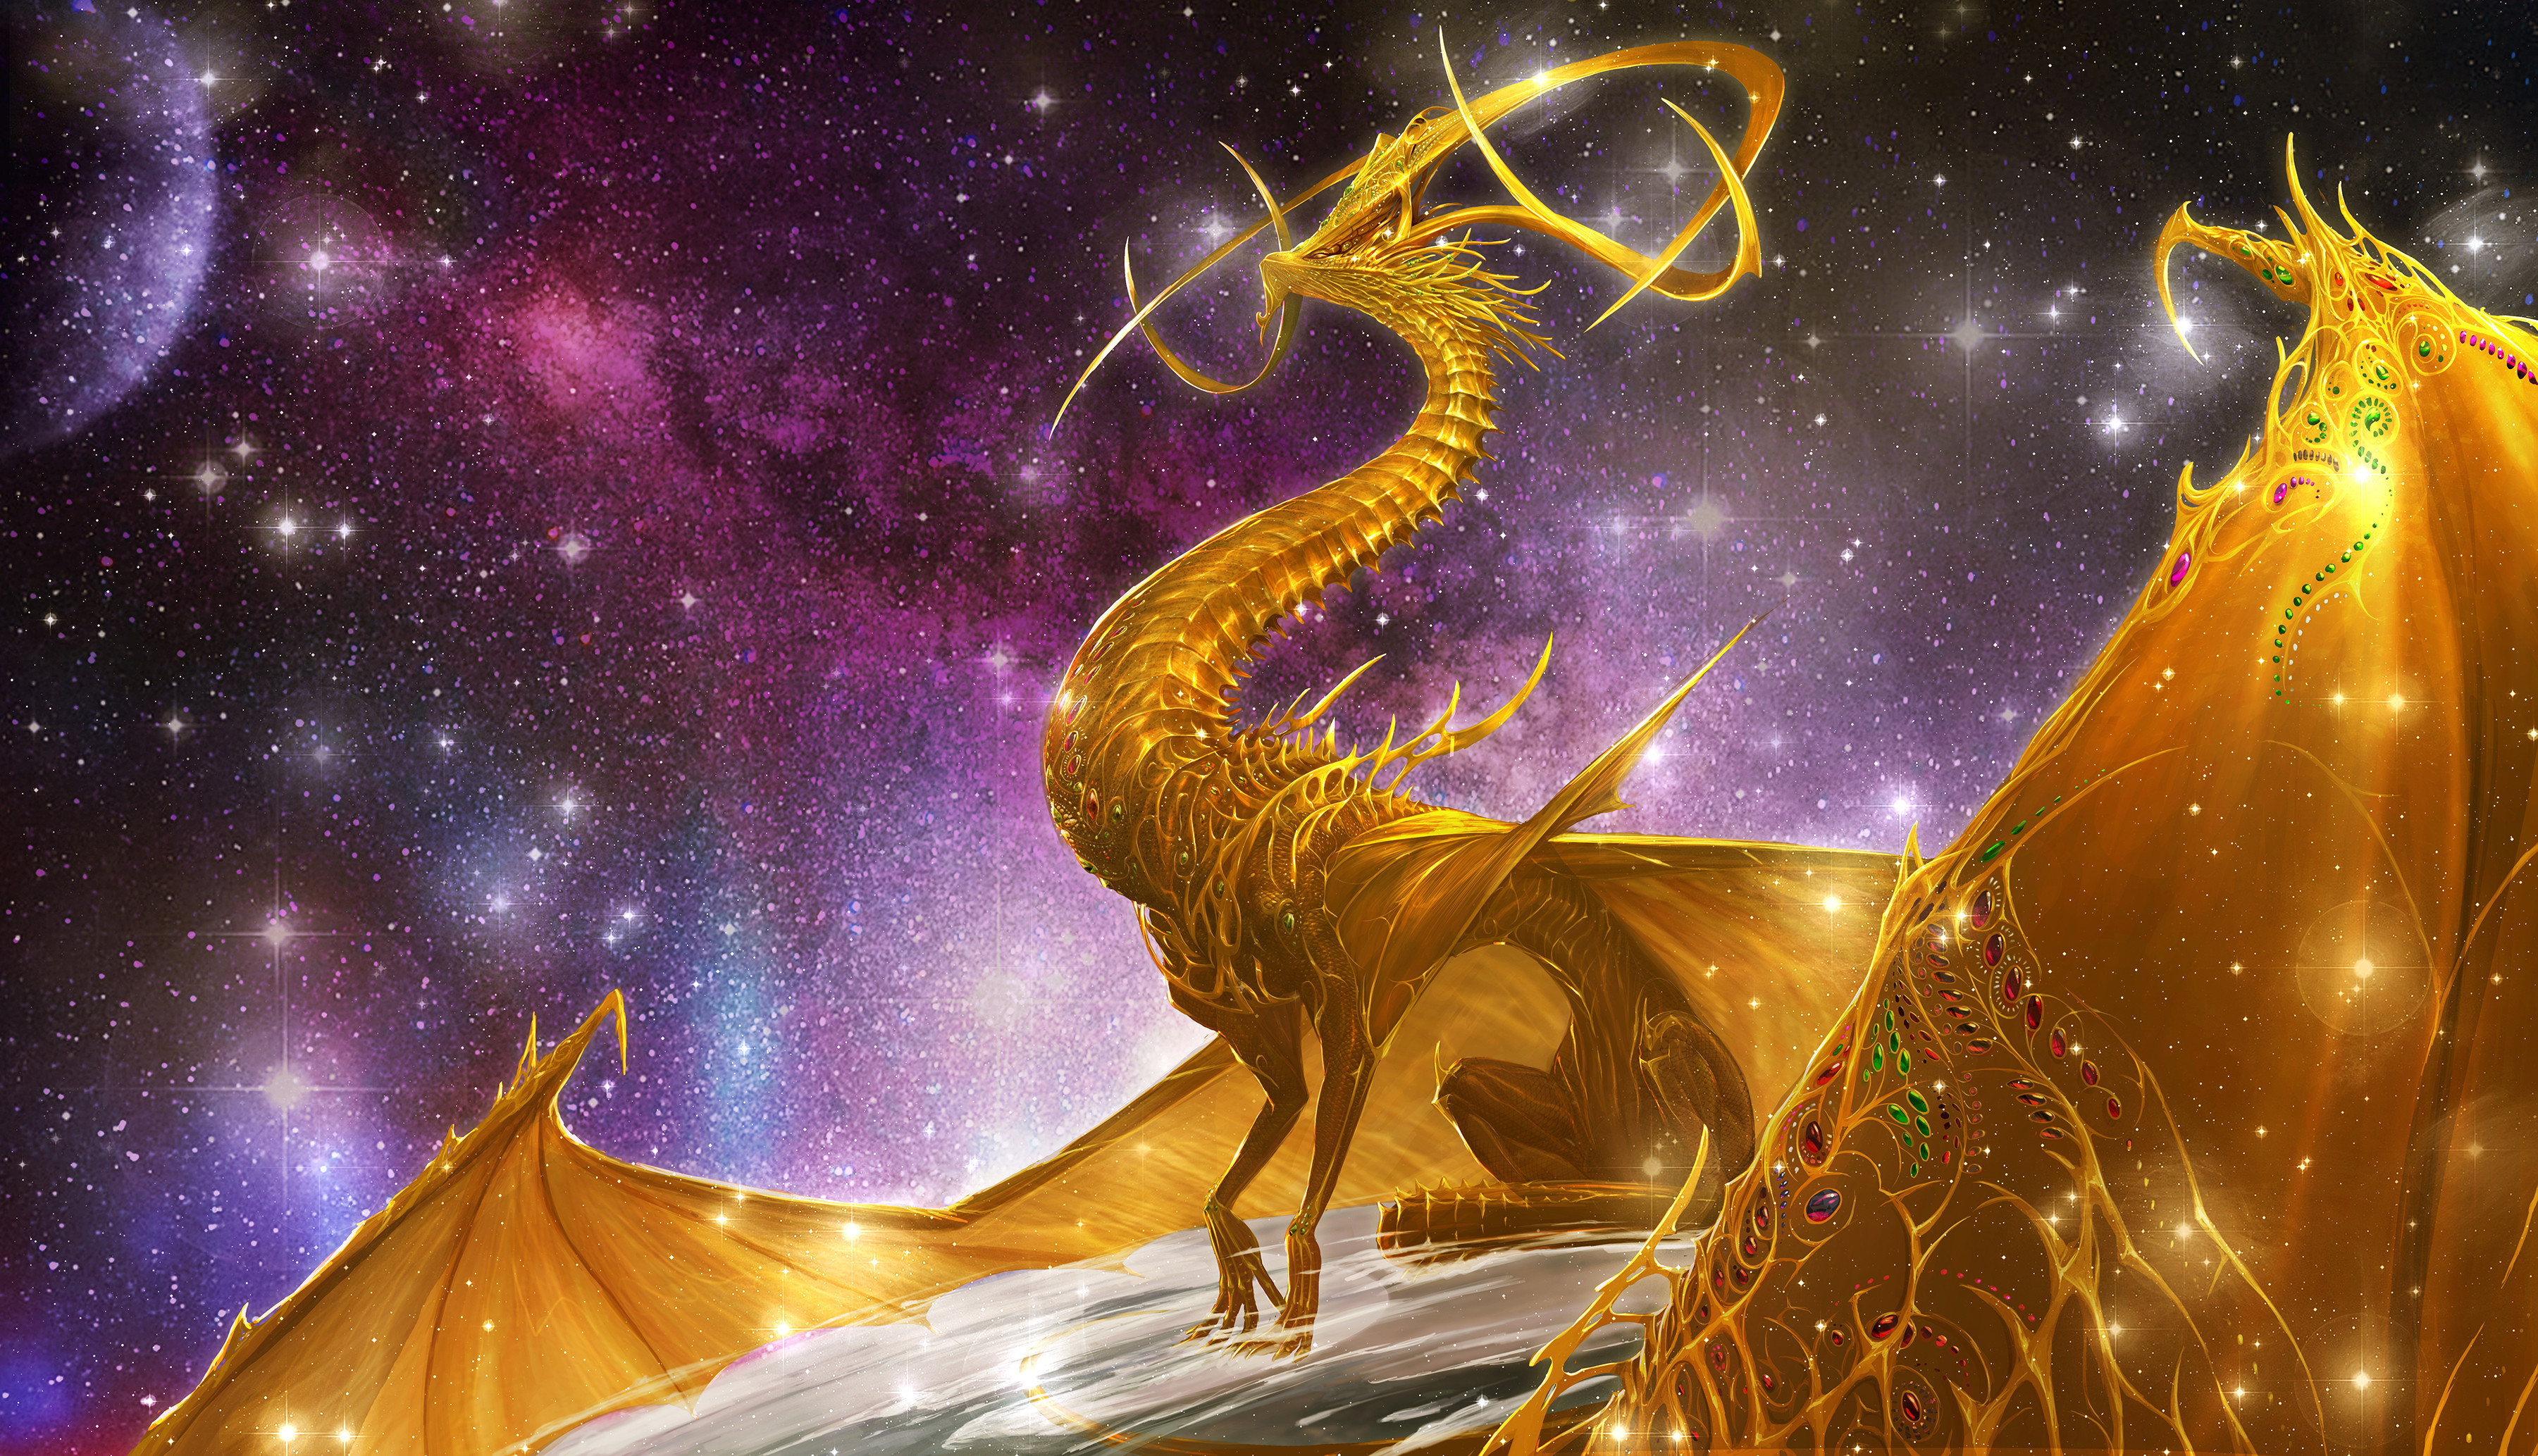 Digital Art Fantasy Art Qingkai Yang Dragon 3602x2067